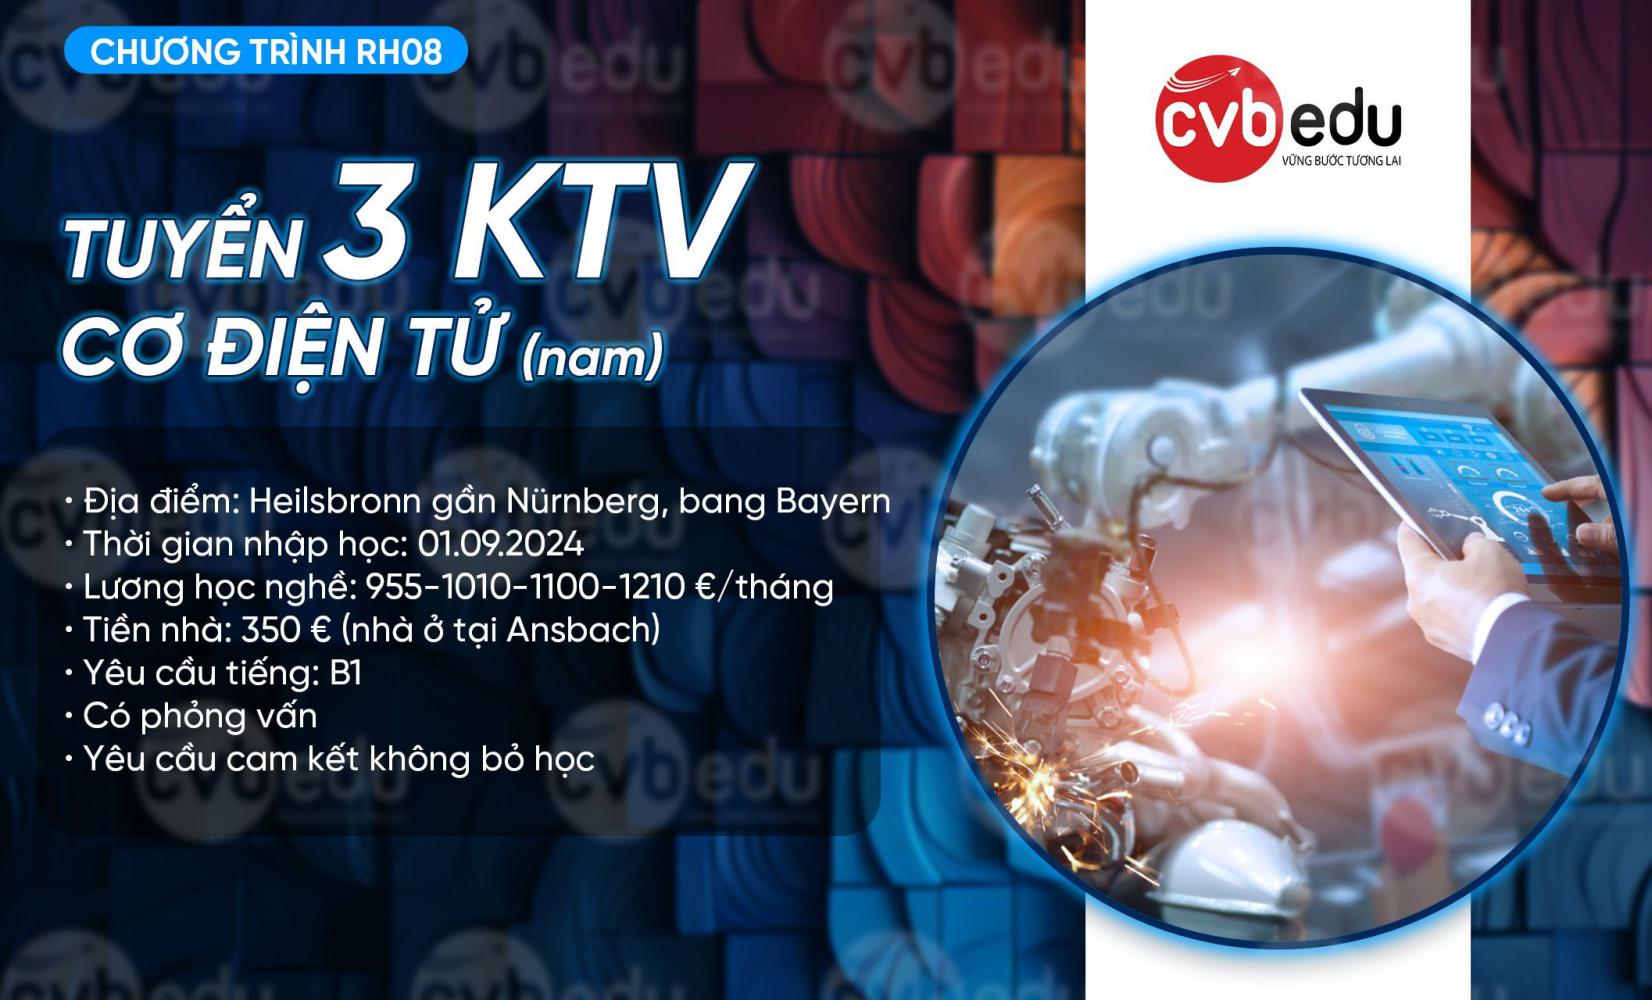 [RH 08] Tuyển 3 KTV Cơ điện tử (nam)